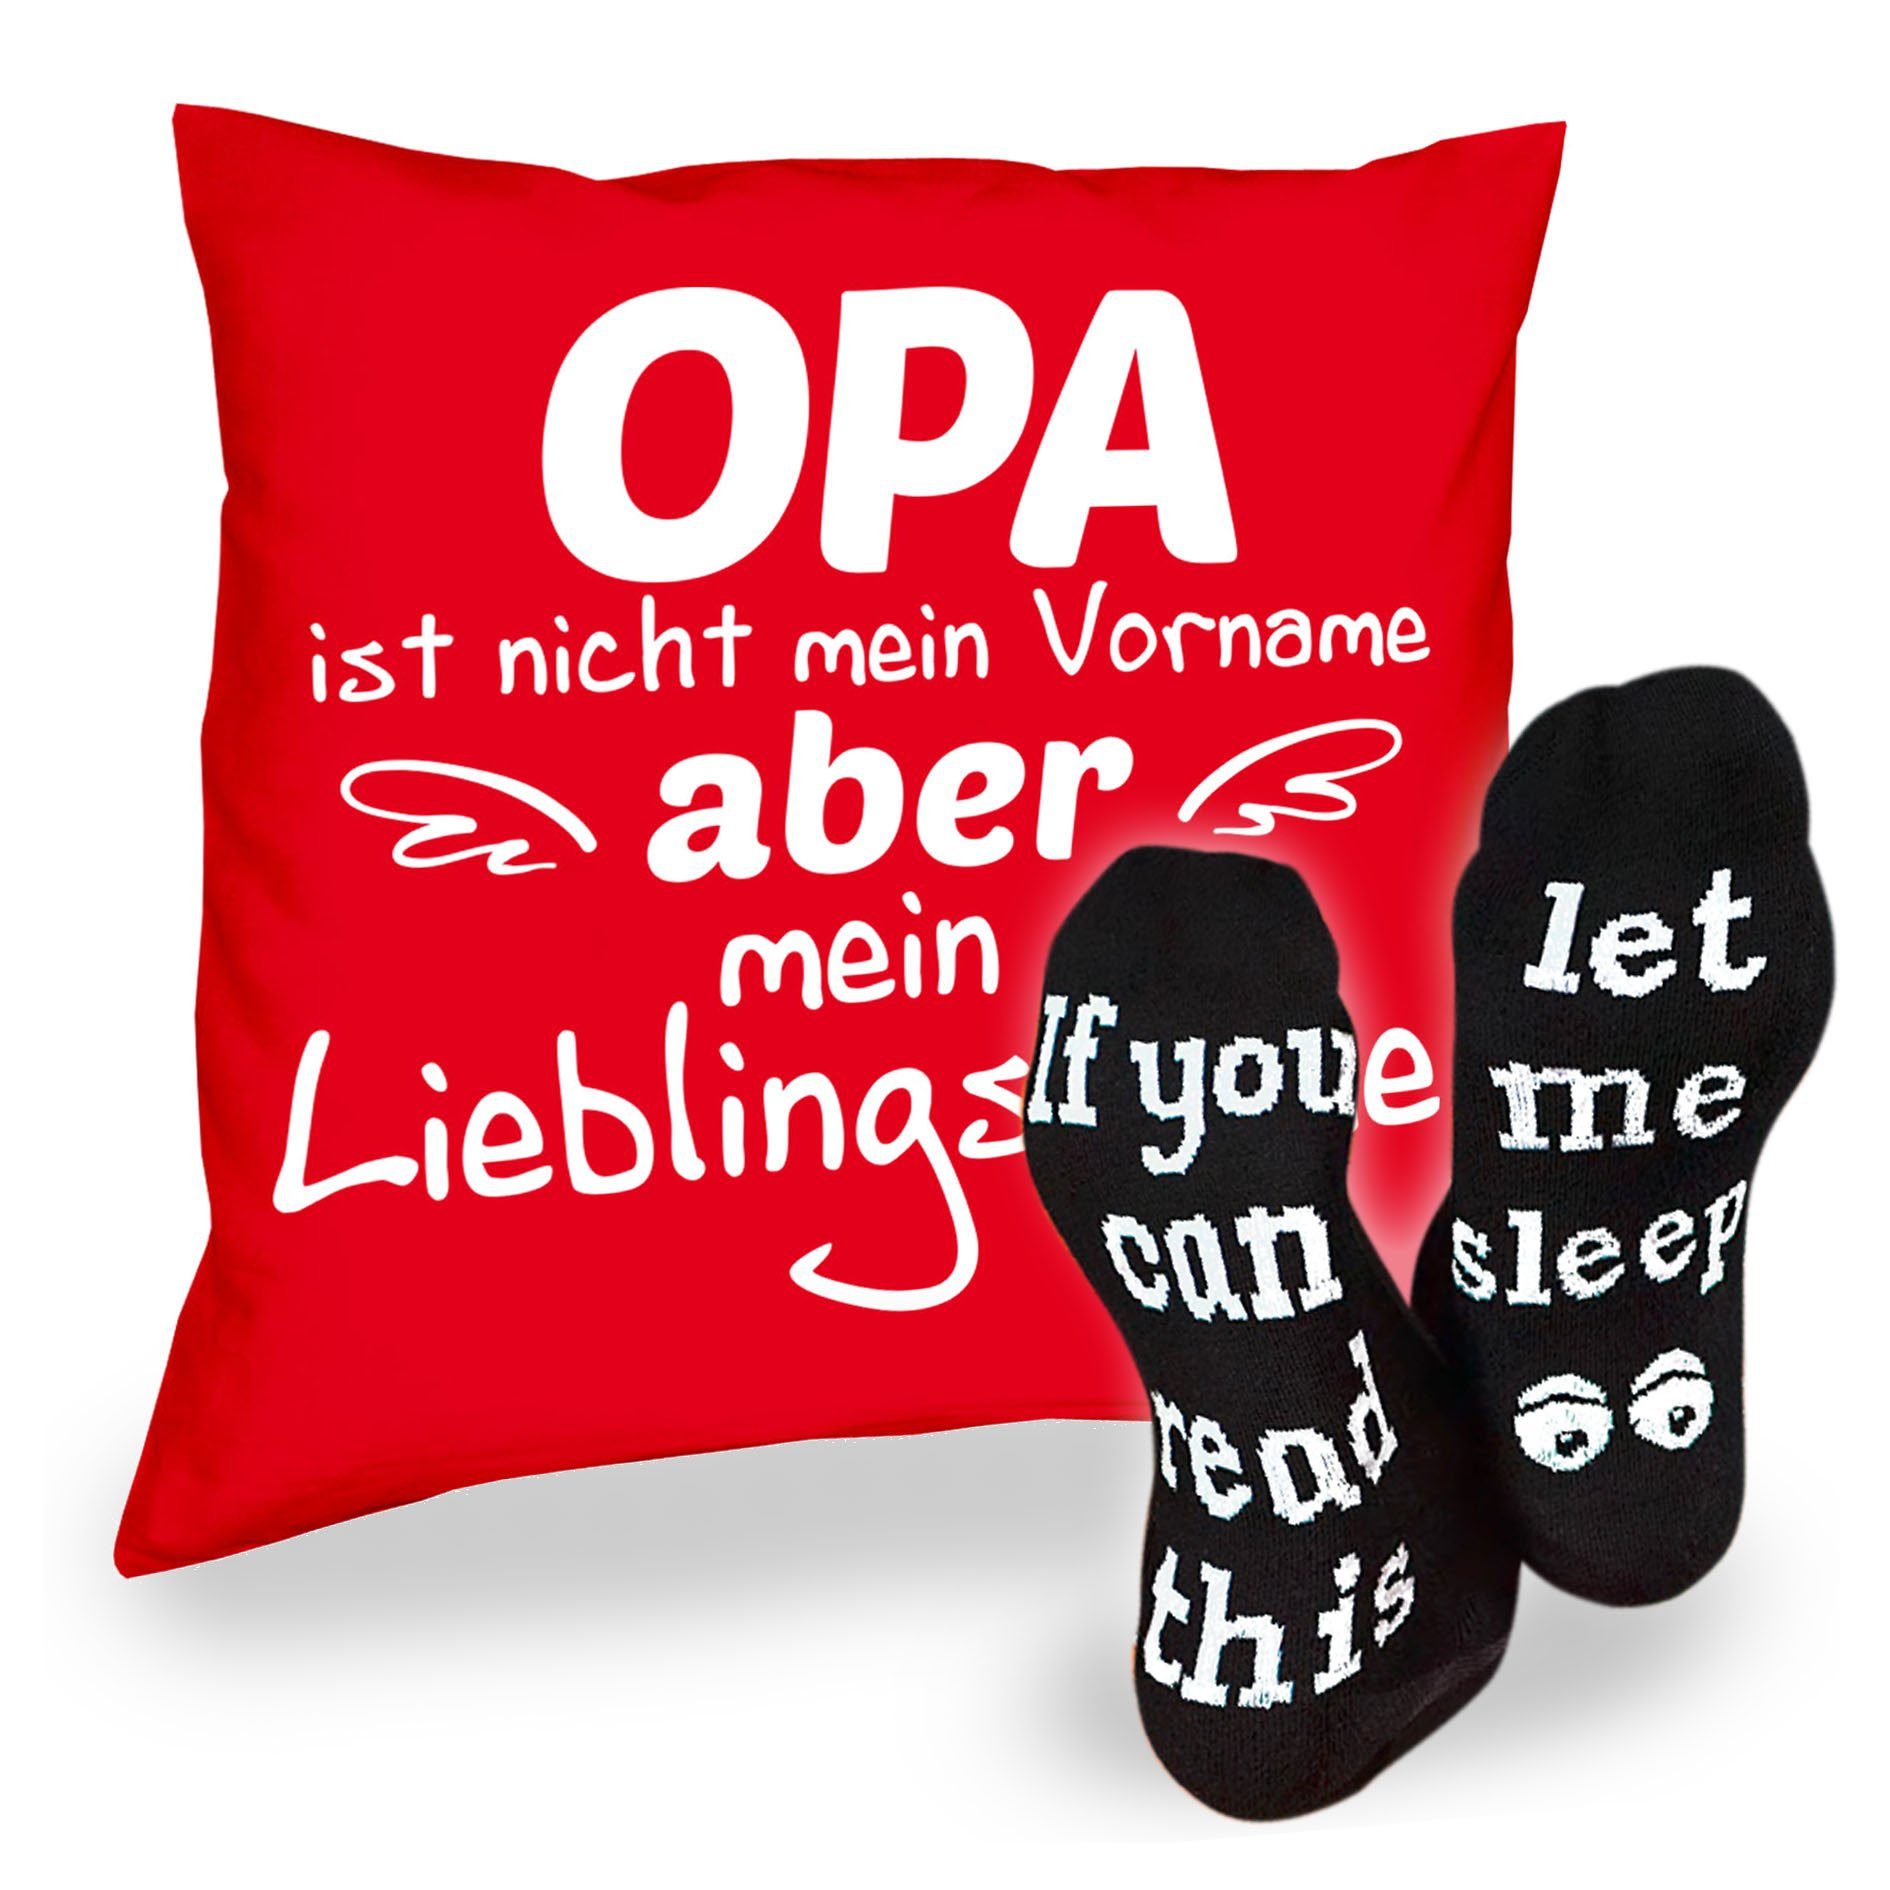 Soreso® Dekokissen Kissen Opa Lieblingsname & Sprüche Socken Sleep, Geschenk Geburtstagsgeschenk rot